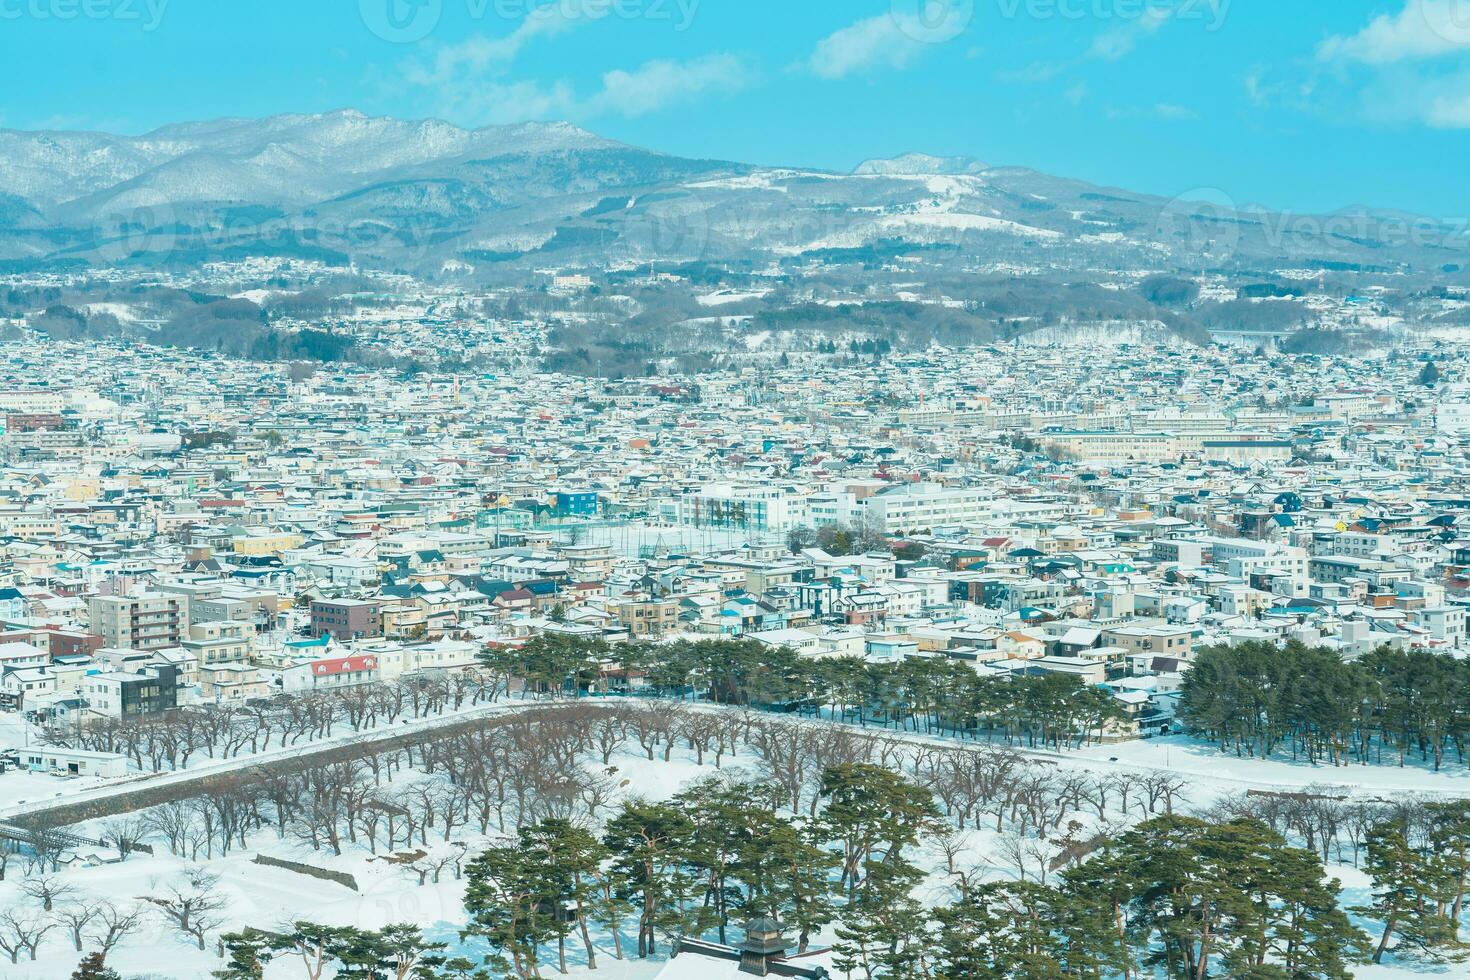 mooi landschap en stadsgezicht van goyokaku toren met sneeuw in winter seizoen. mijlpaal en populair voor attracties in hokkaido, japan.reizen en vakantie concept foto